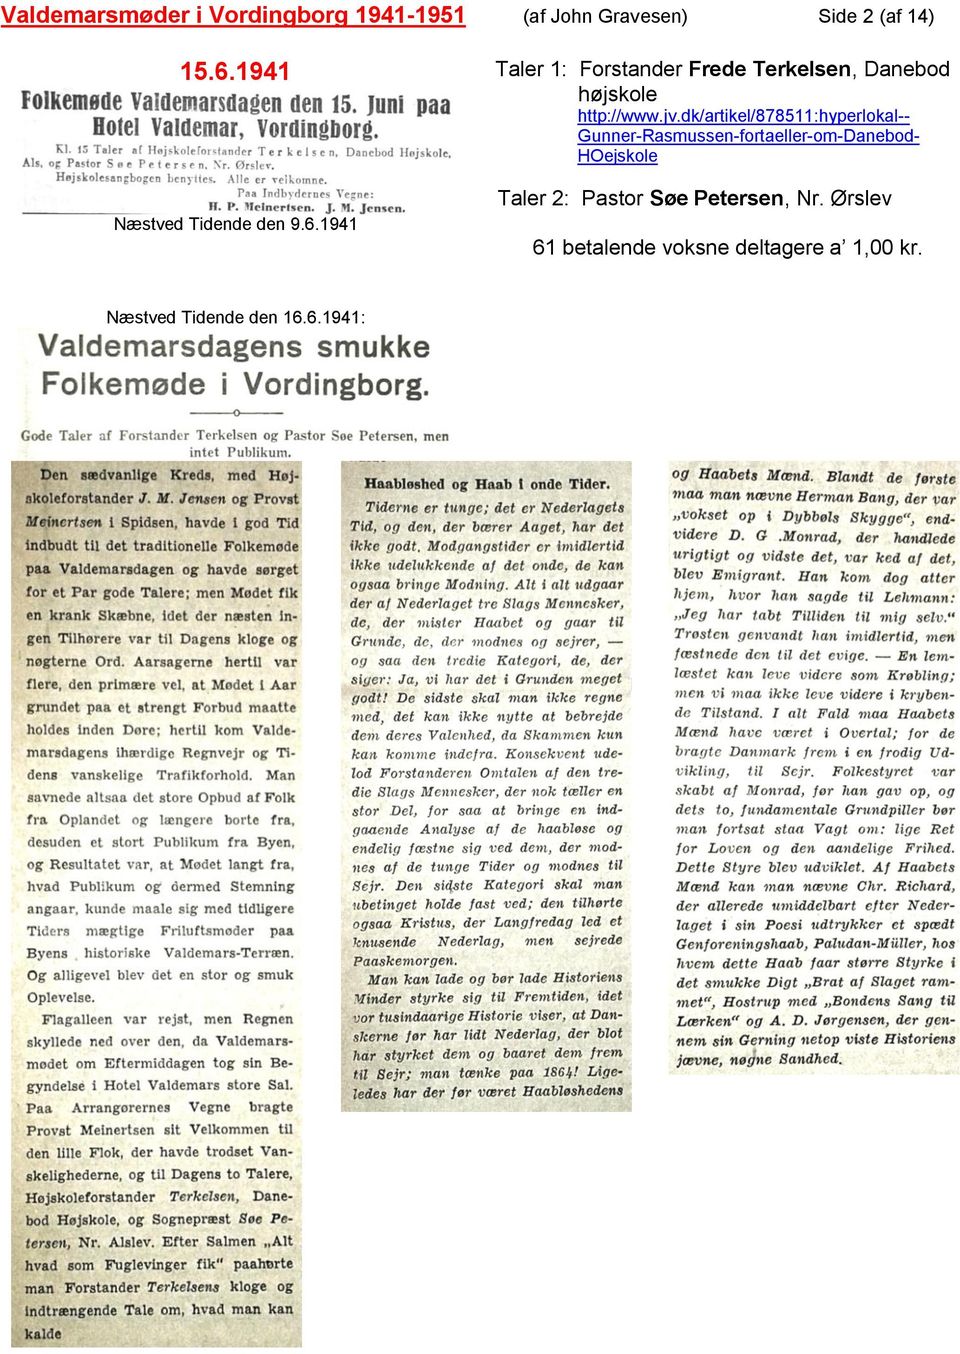 1941 Taler 1: Forstander Frede Terkelsen, Danebod højskole http://www.jv.